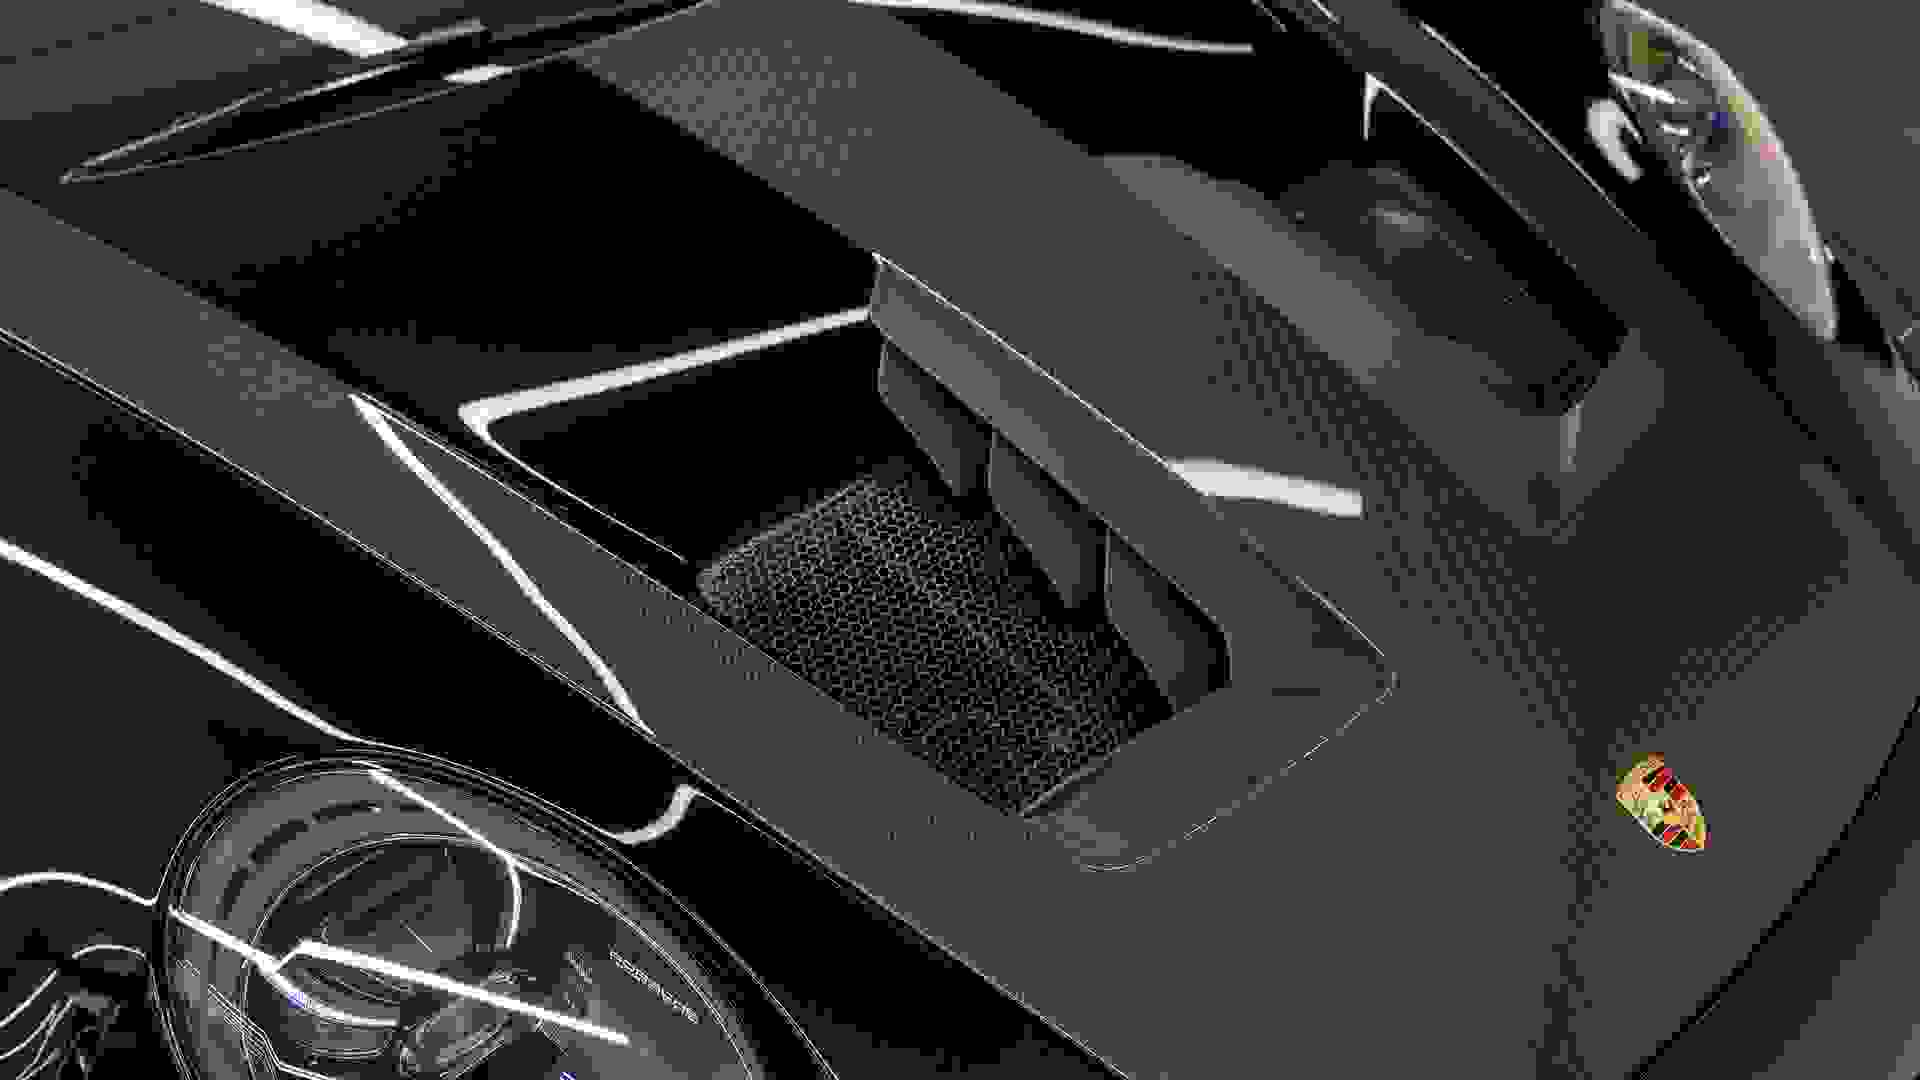 Porsche GT3 RS Photo 6f8d8ede-210b-45a8-b890-8200548012ec.jpg